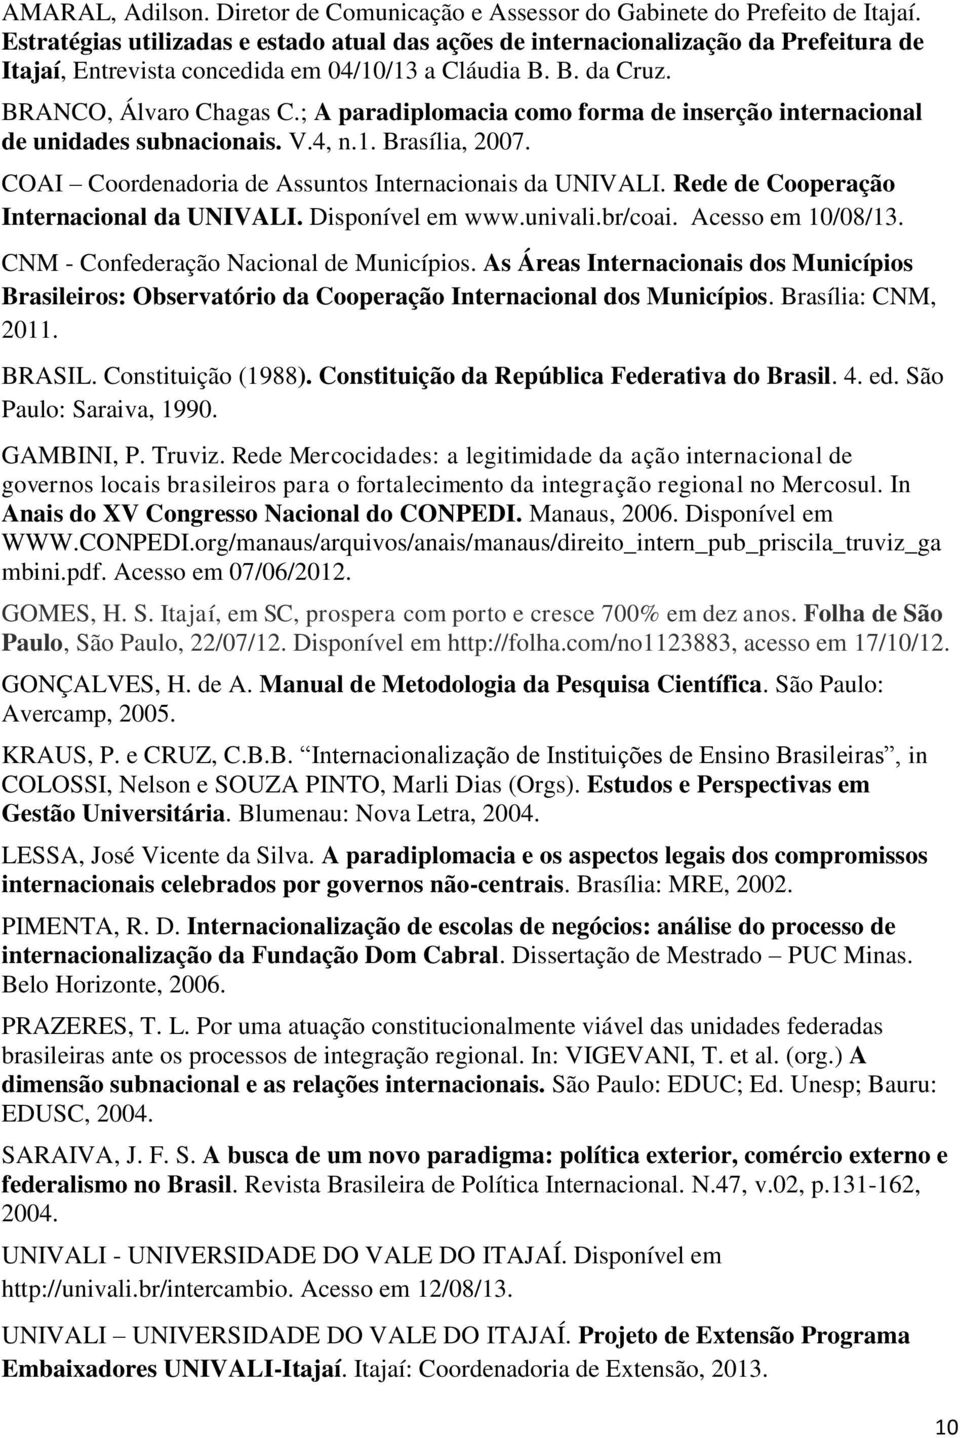 ; A paradiplomacia como forma de inserção internacional de unidades subnacionais. V.4, n.1. Brasília, 2007. COAI Coordenadoria de Assuntos Internacionais da UNIVALI.